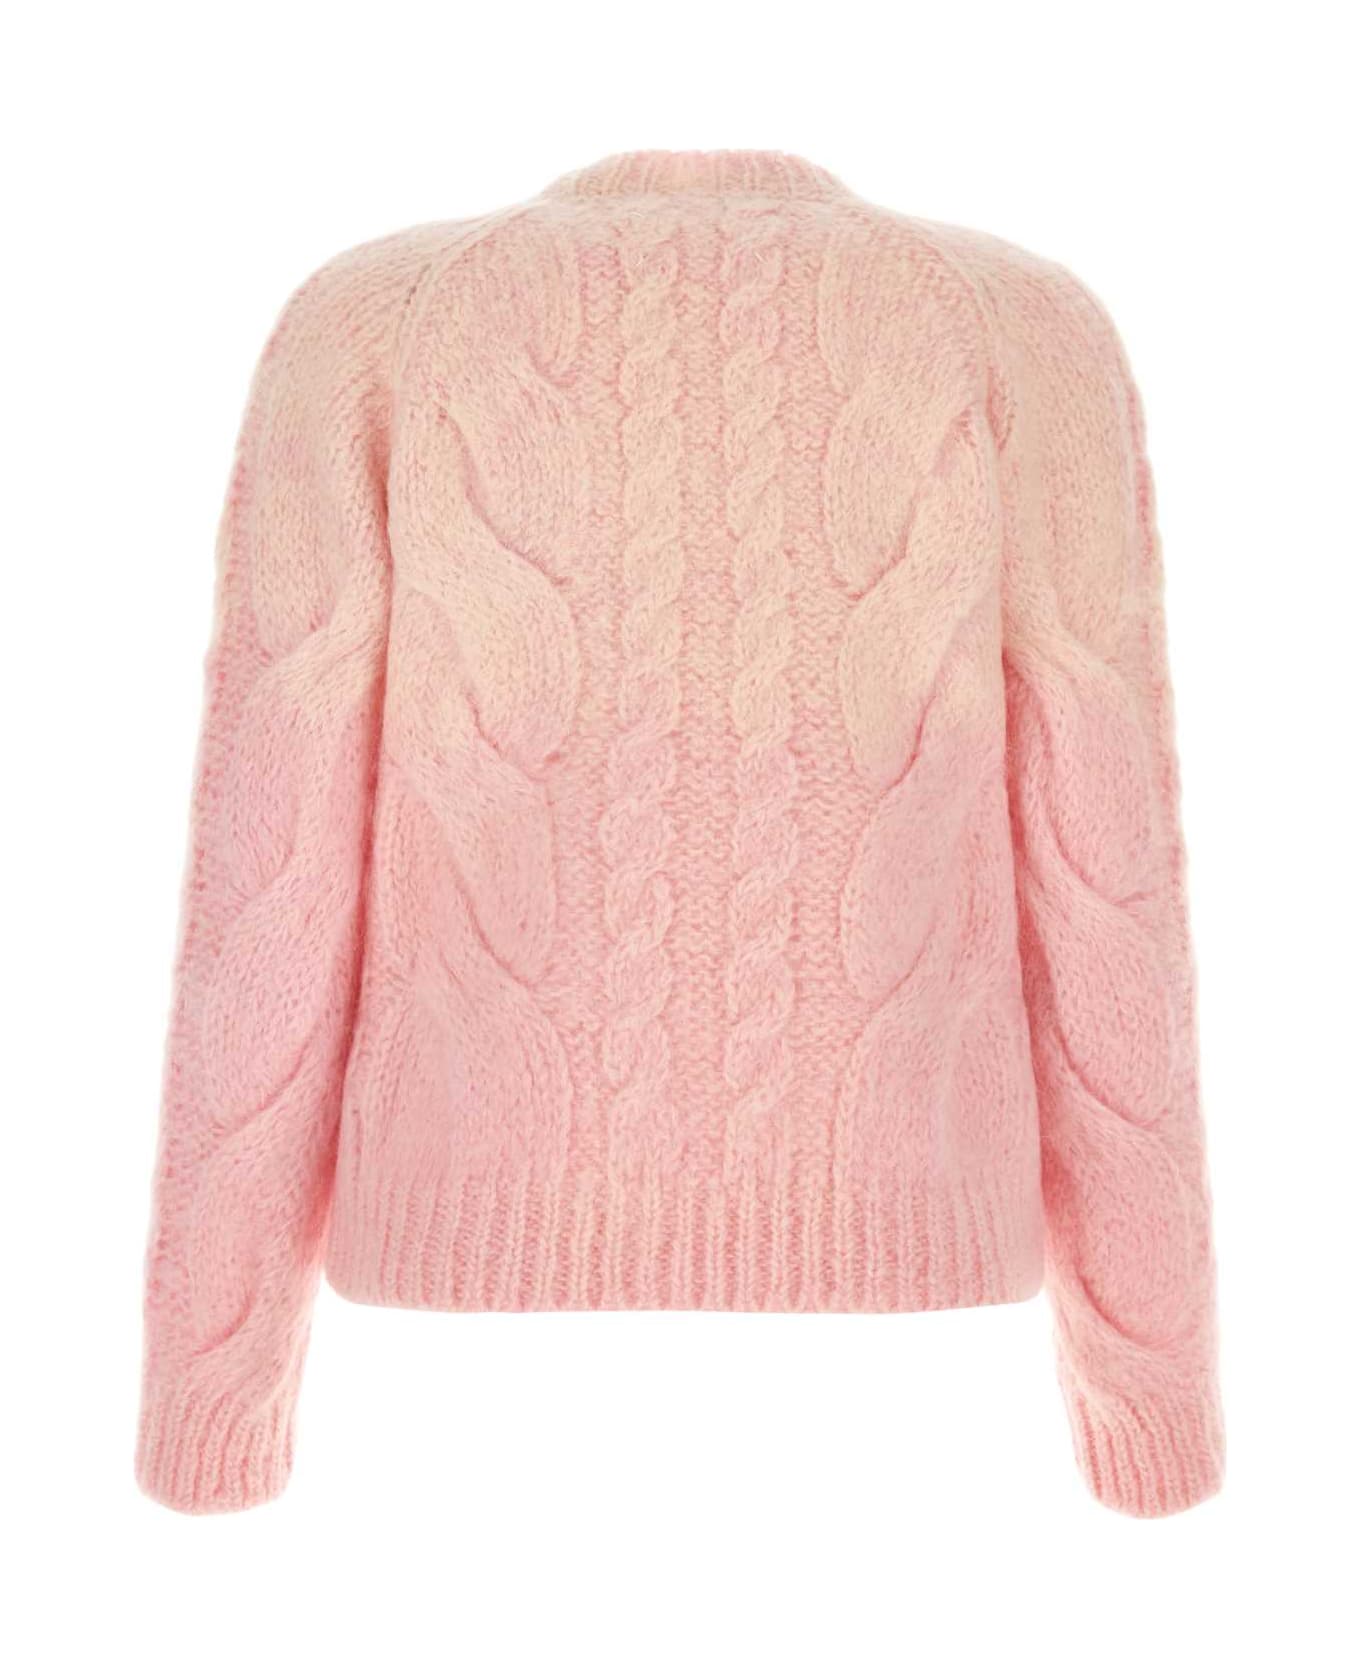 Maison Margiela Pink Mohair Blend Sweater - PINK